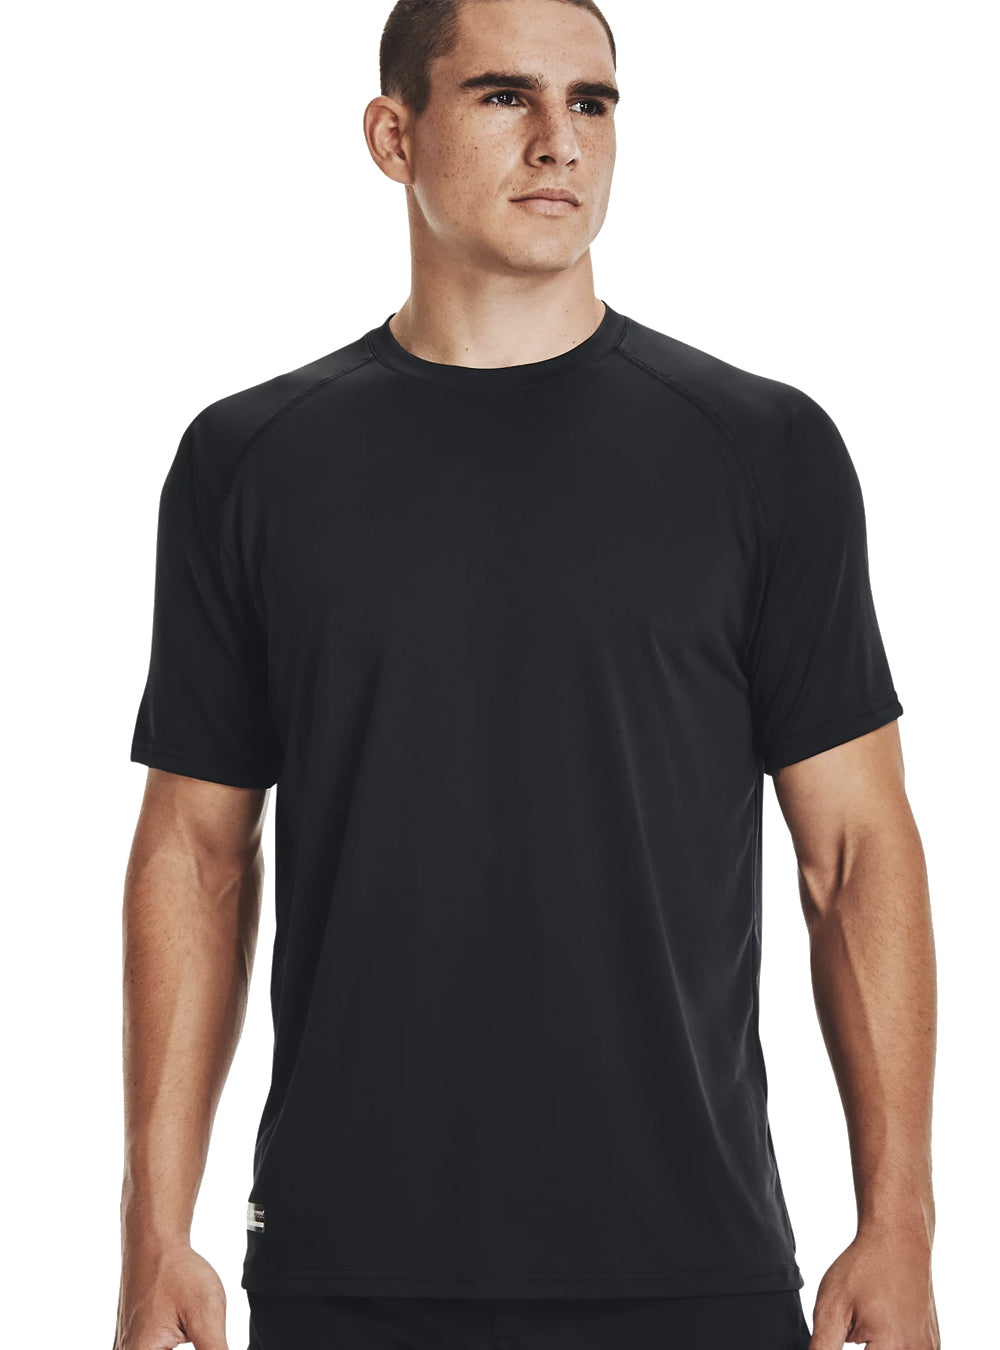 Under Armour Tactical Tech Short Sleeve T-Shirt - Black